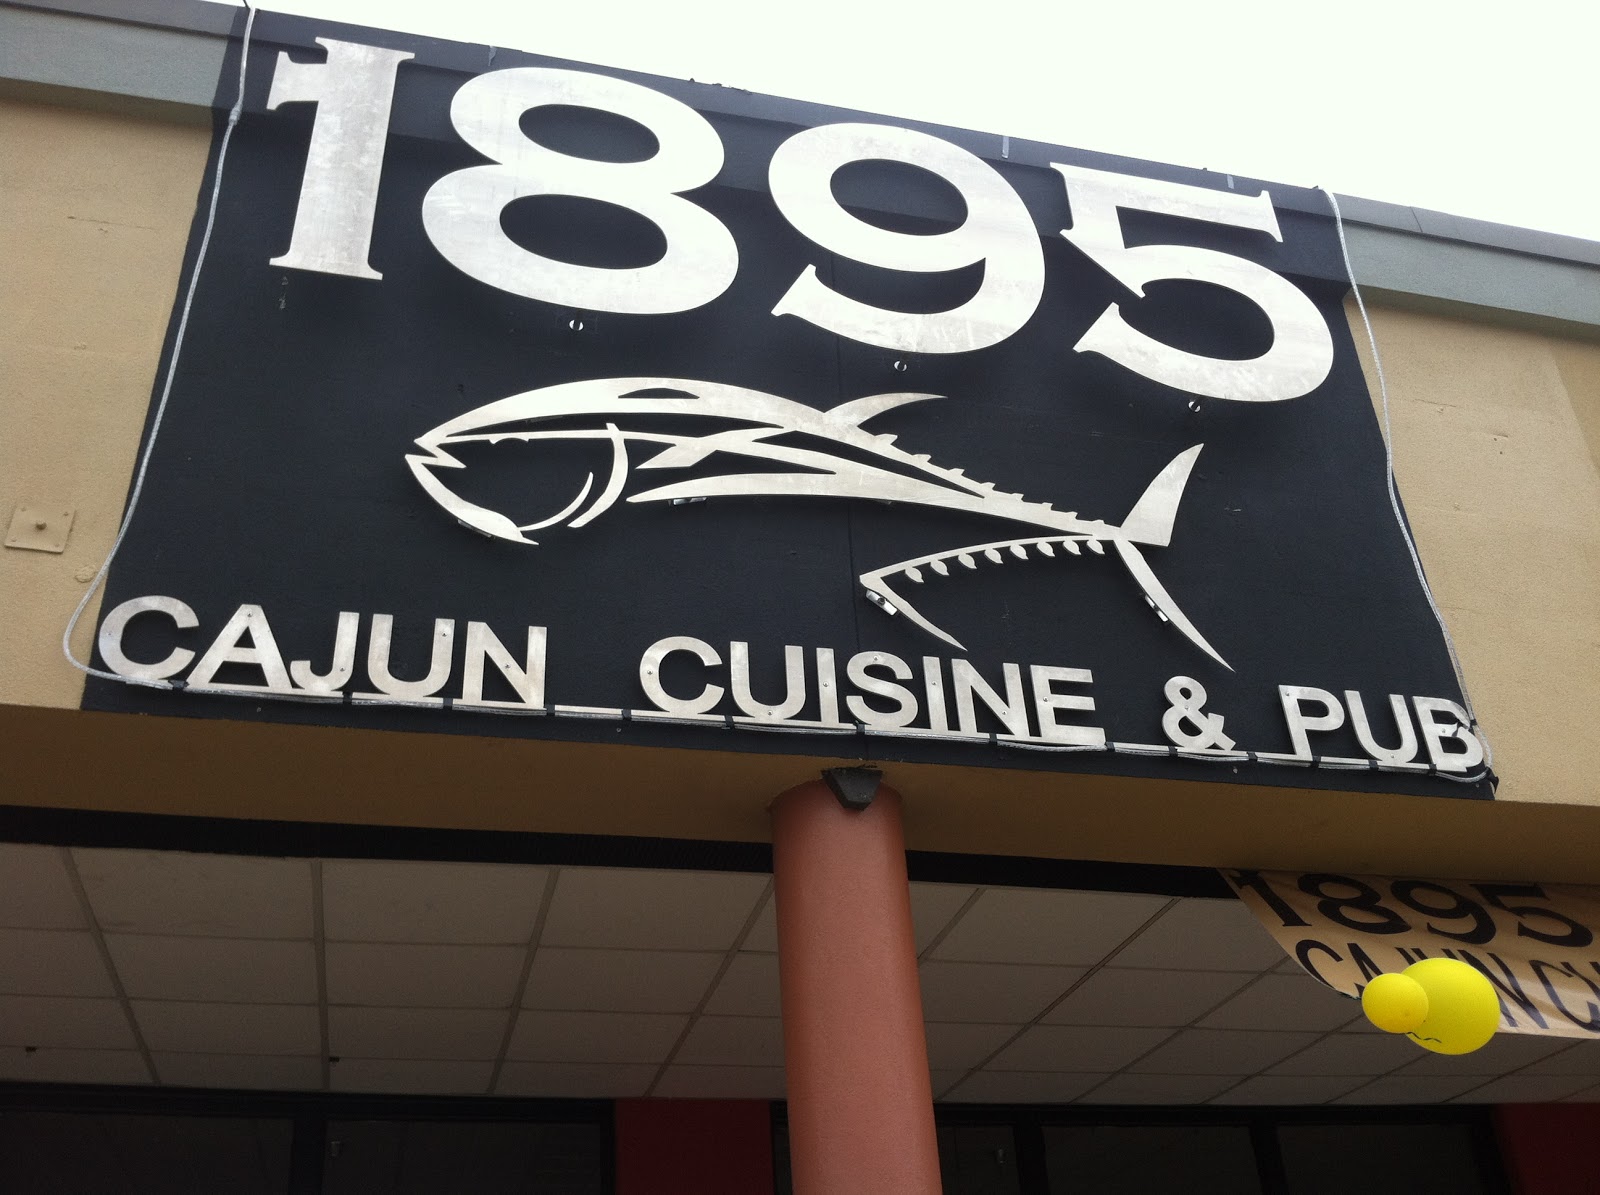 1895 Cajun Cuisine and Pub